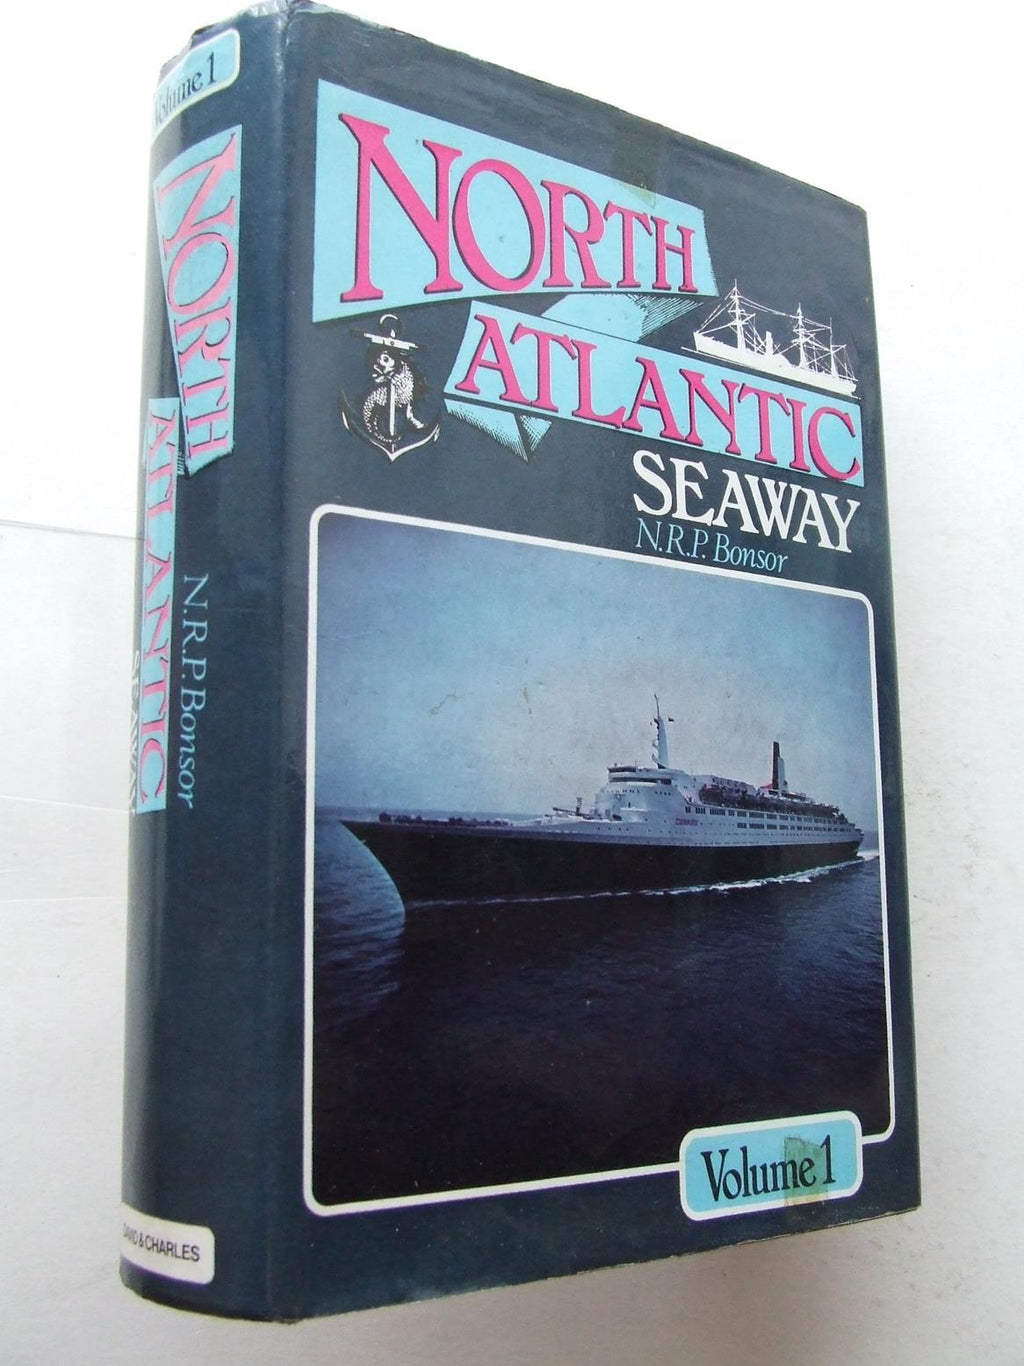 North Atlantic Seaway